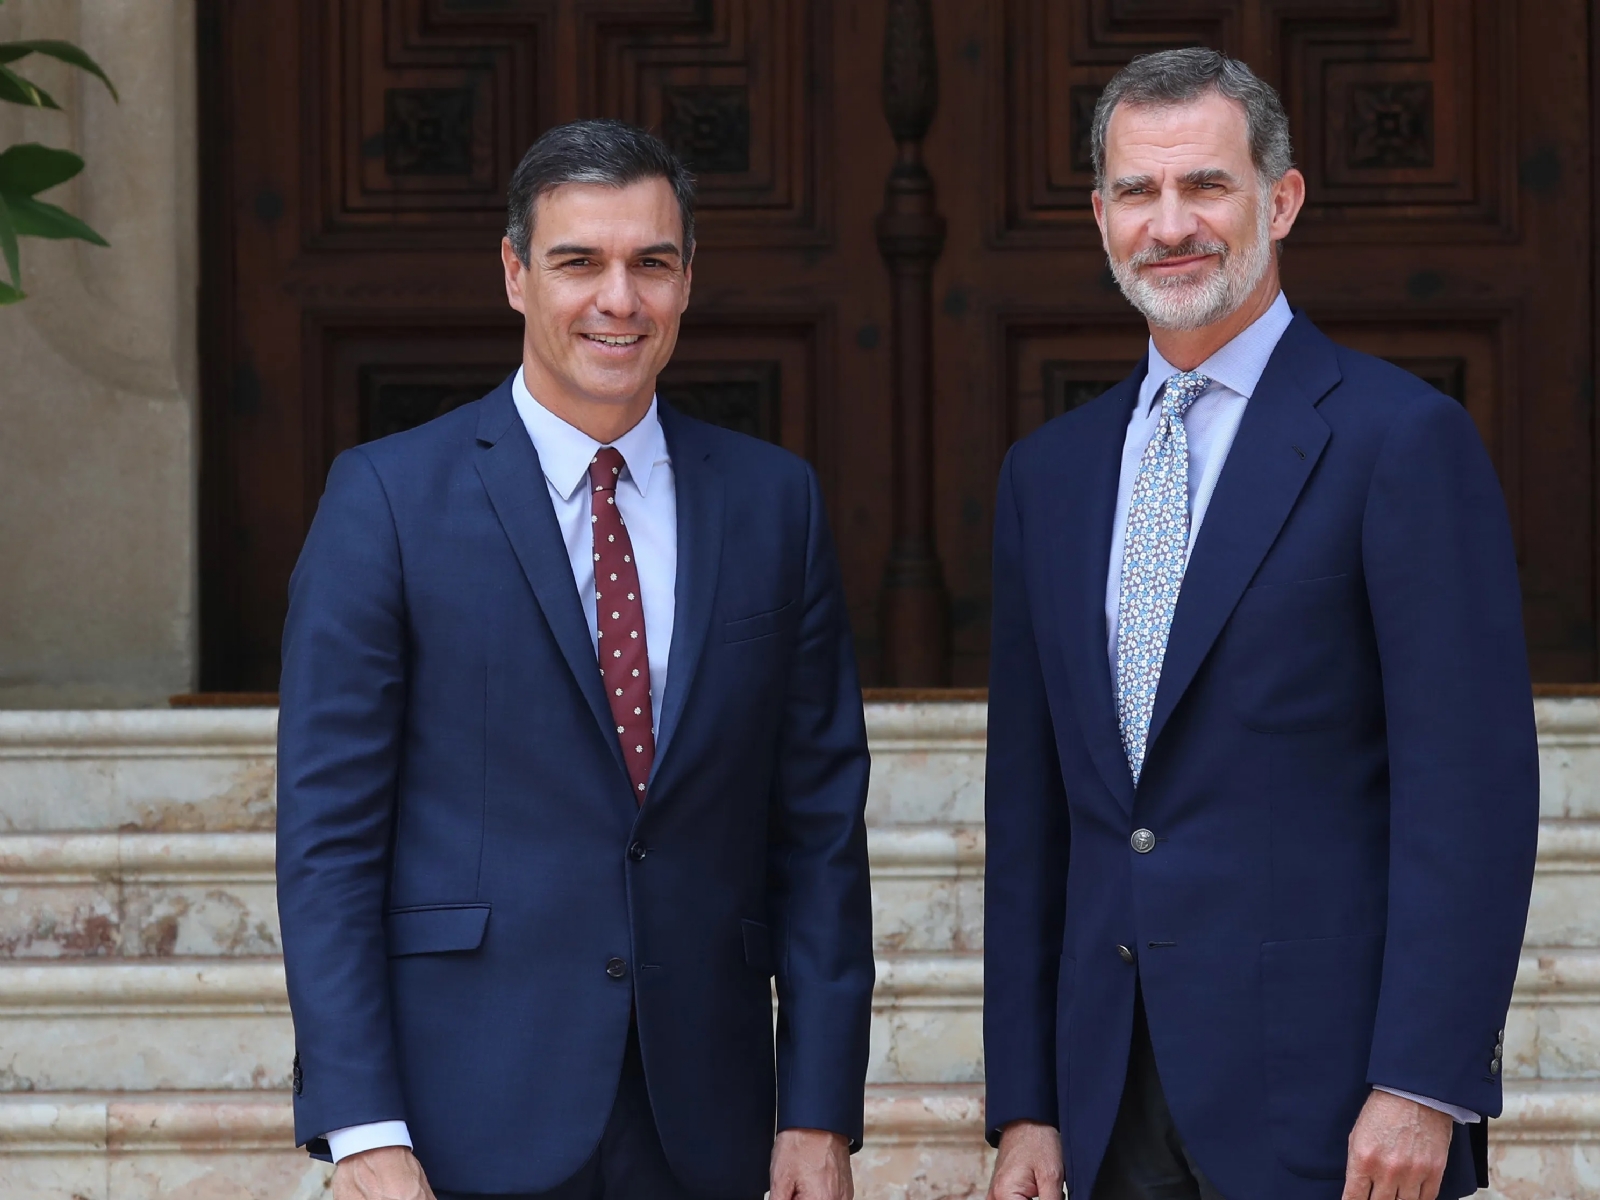 Rey de España propone a Pedro Sánchez como candidato presidencial y él acepta